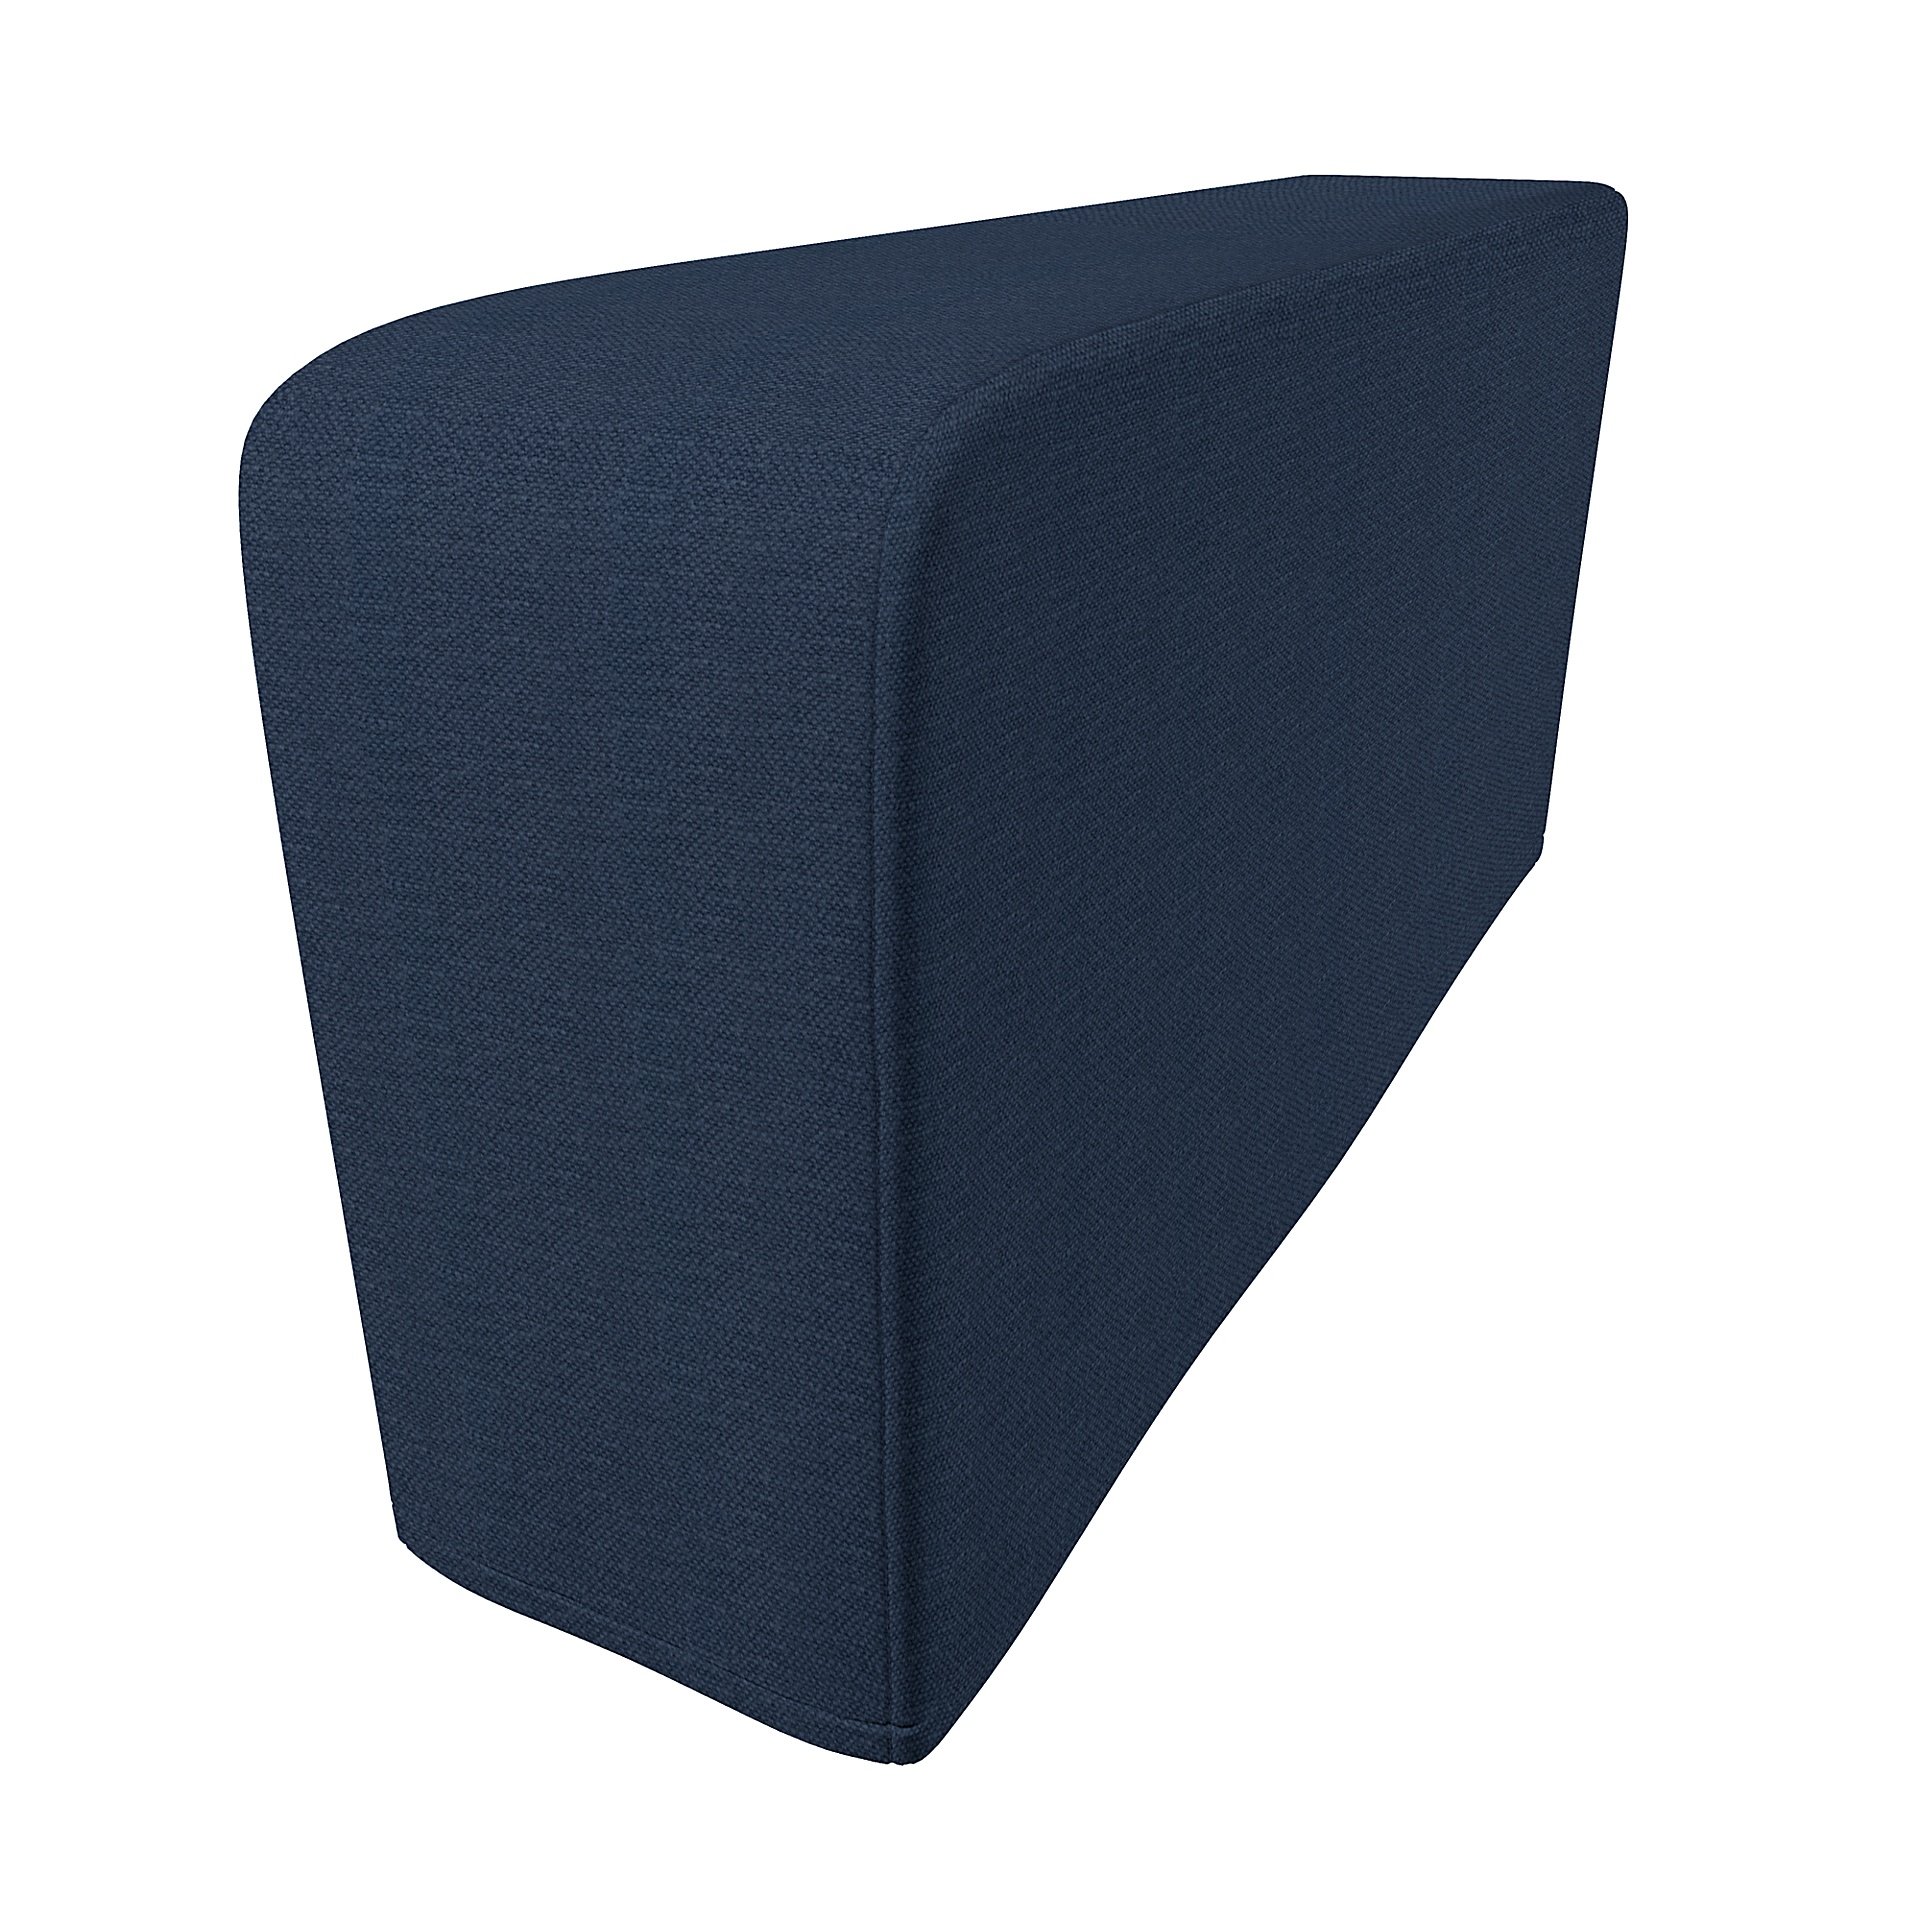 IKEA - Klippan Armrest Protectors (One pair), Navy Blue, Linen - Bemz